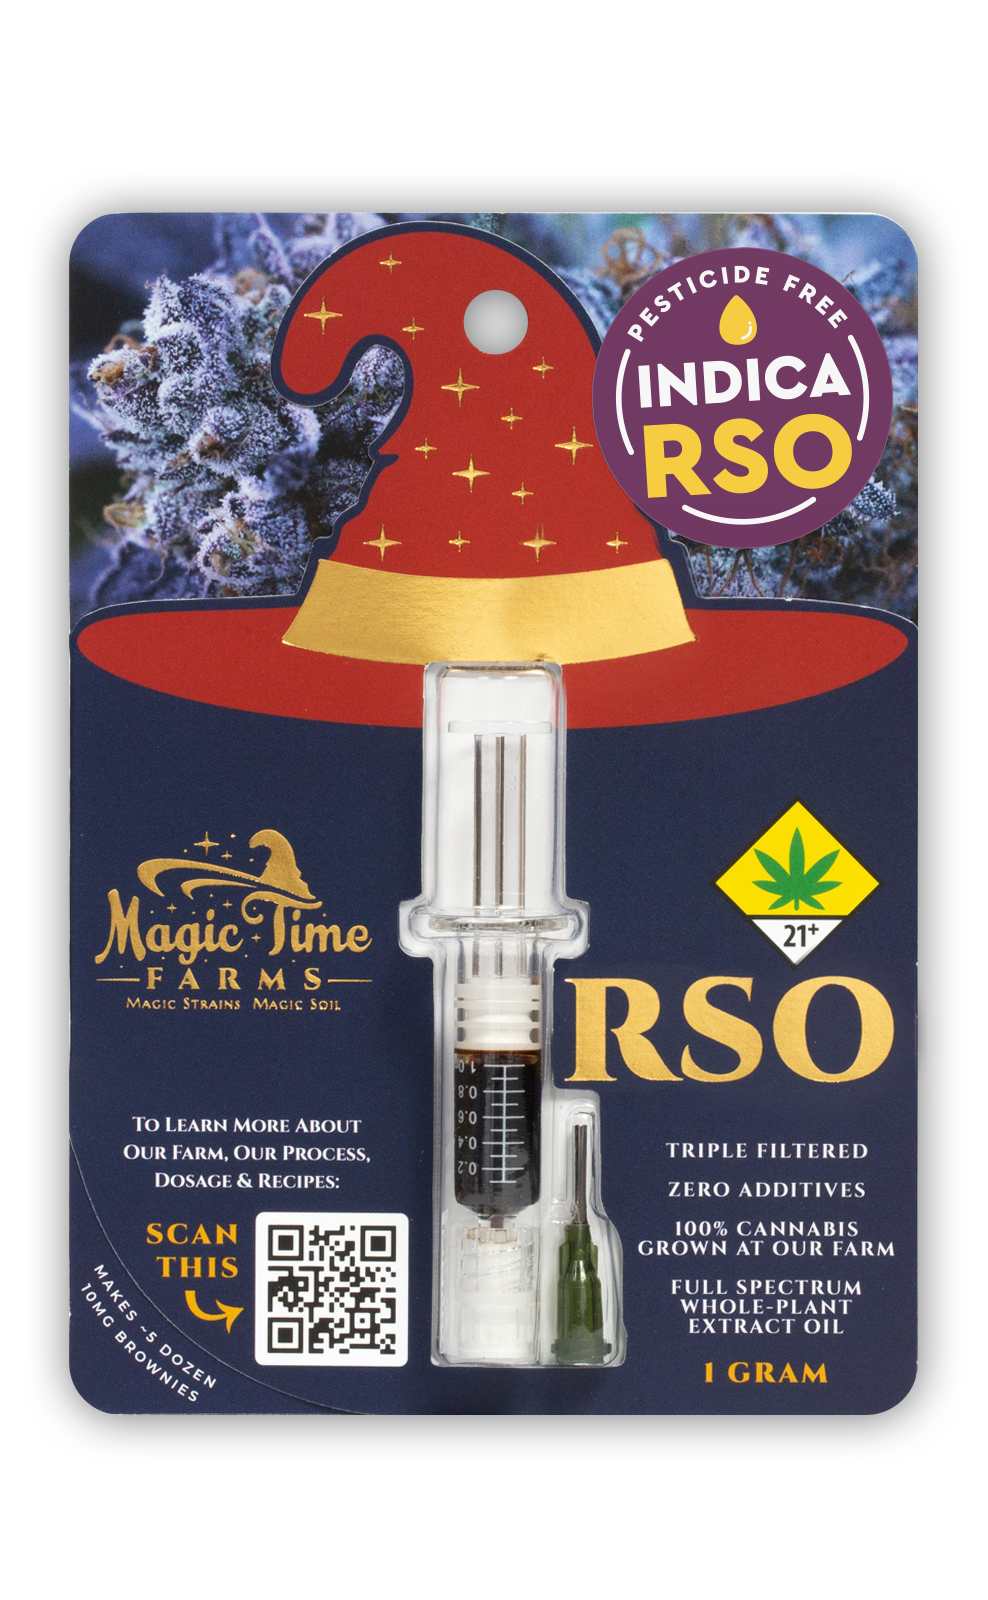 Magic Time Farms RSO package